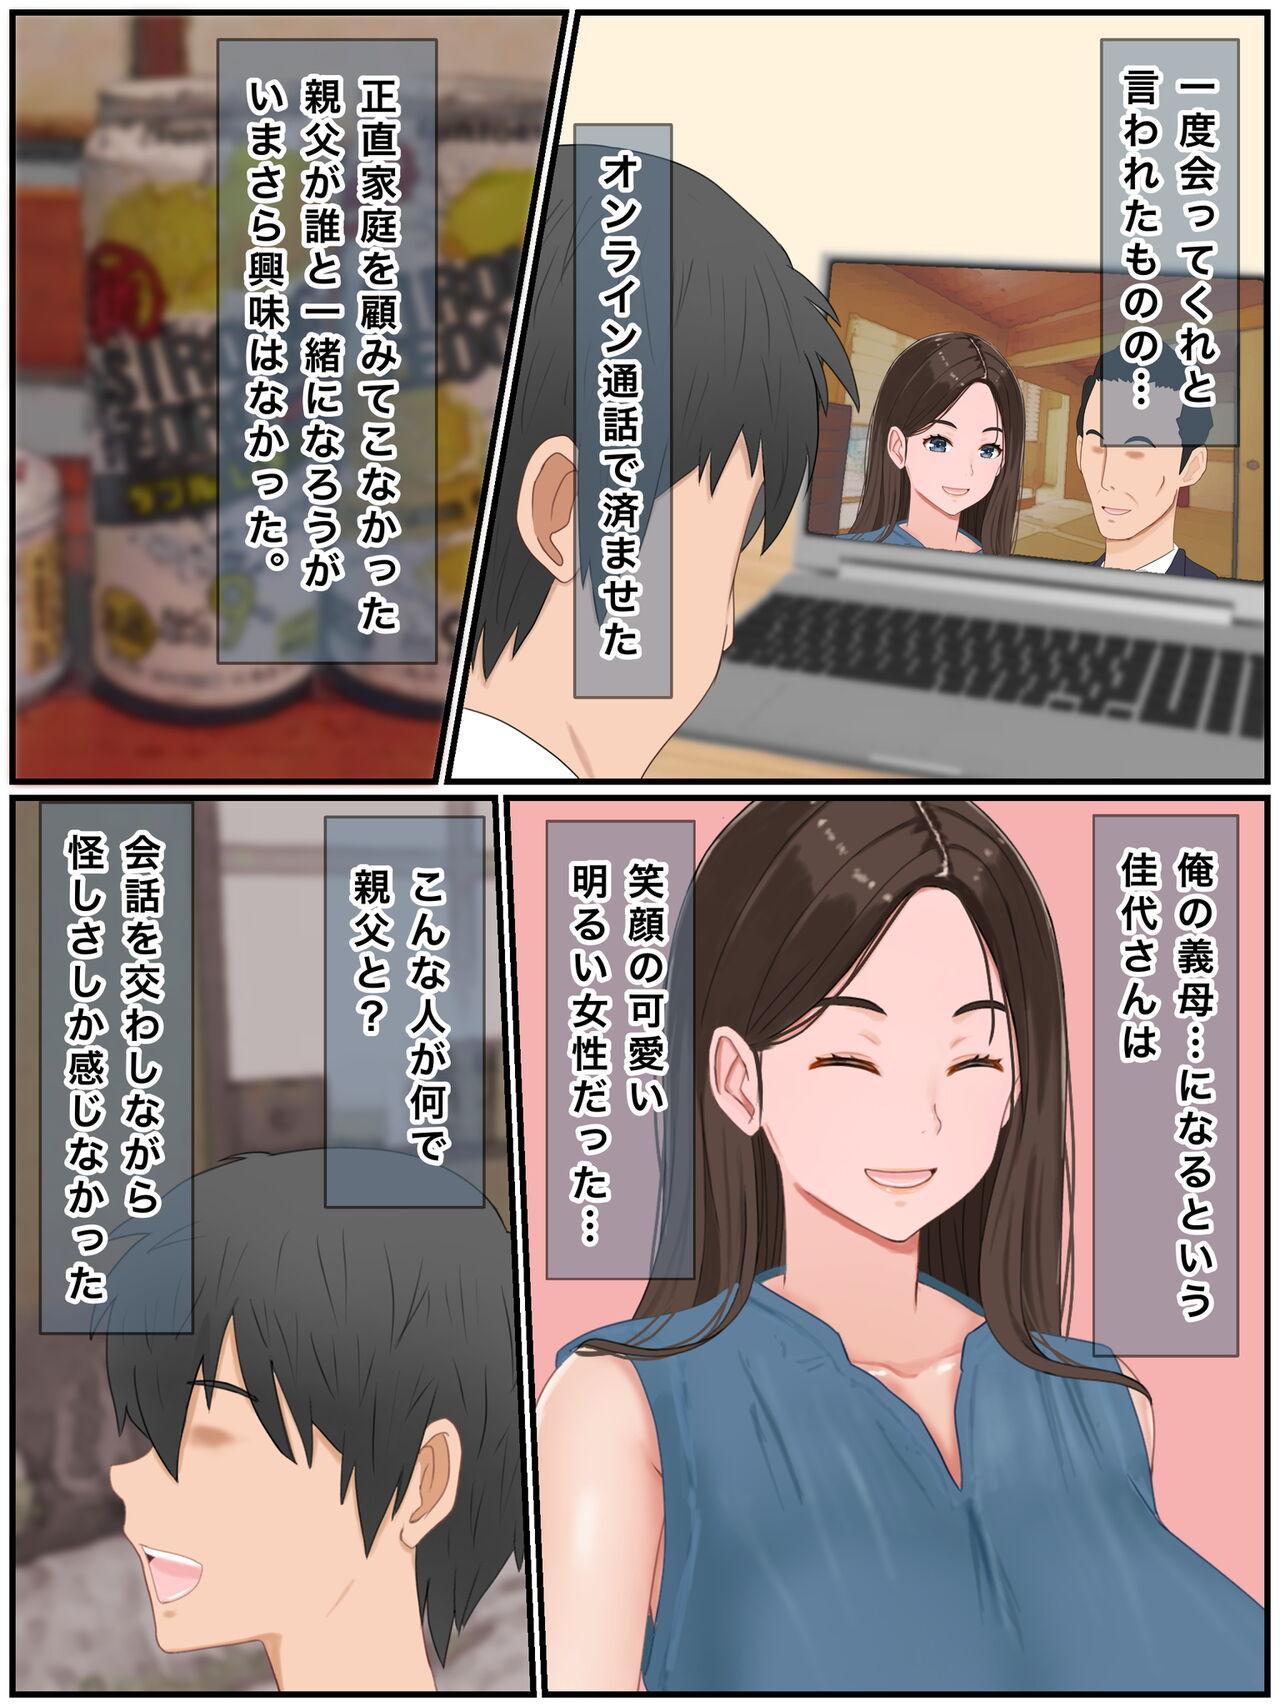 Naughty Girino hahato tanezukekoubiseikatsu~ Kozukurishinaito derarenaimurade Cartoon - Picture 3